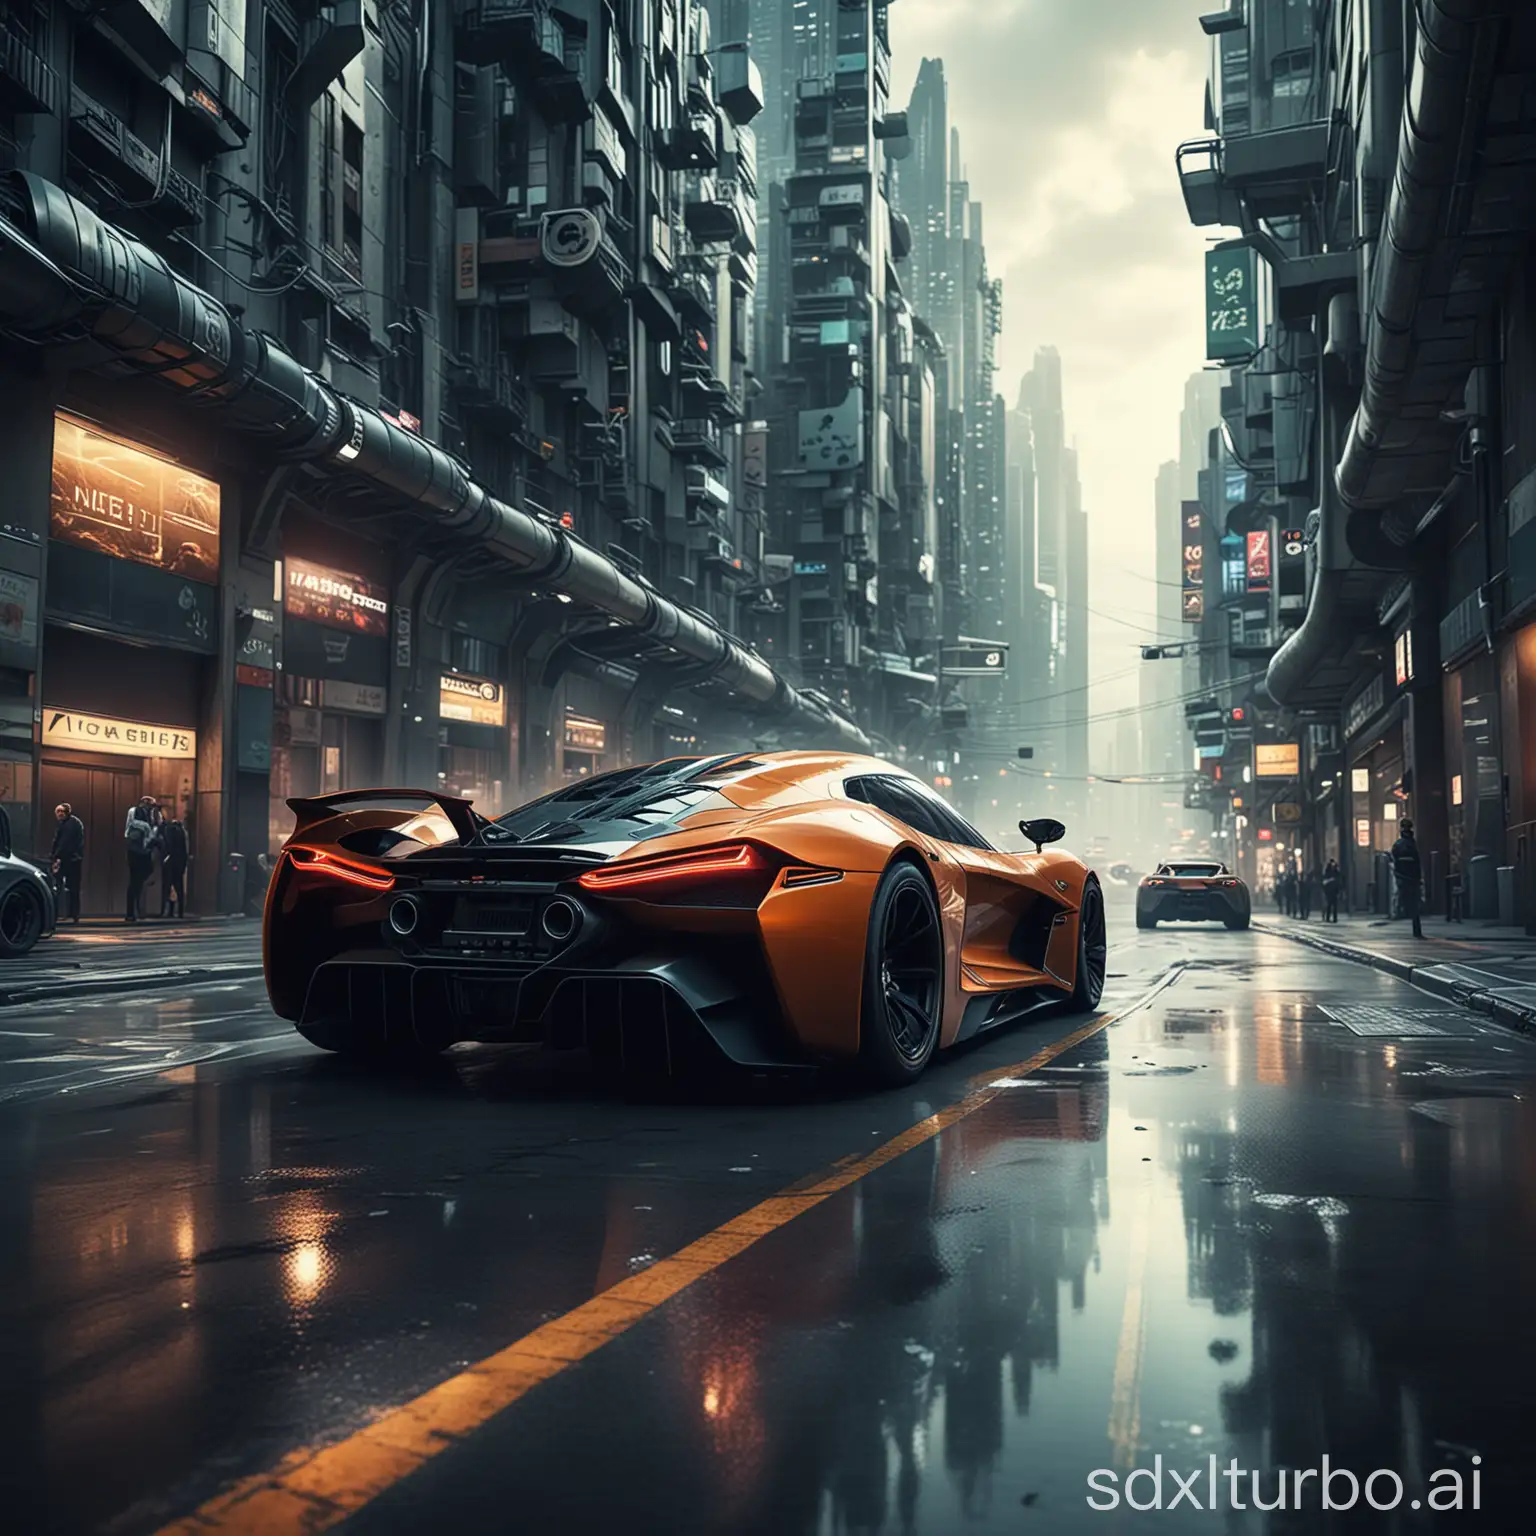 Futuristic-City-Car-Racing-Scene-HighSpeed-Action-in-a-SciFi-Metropolis